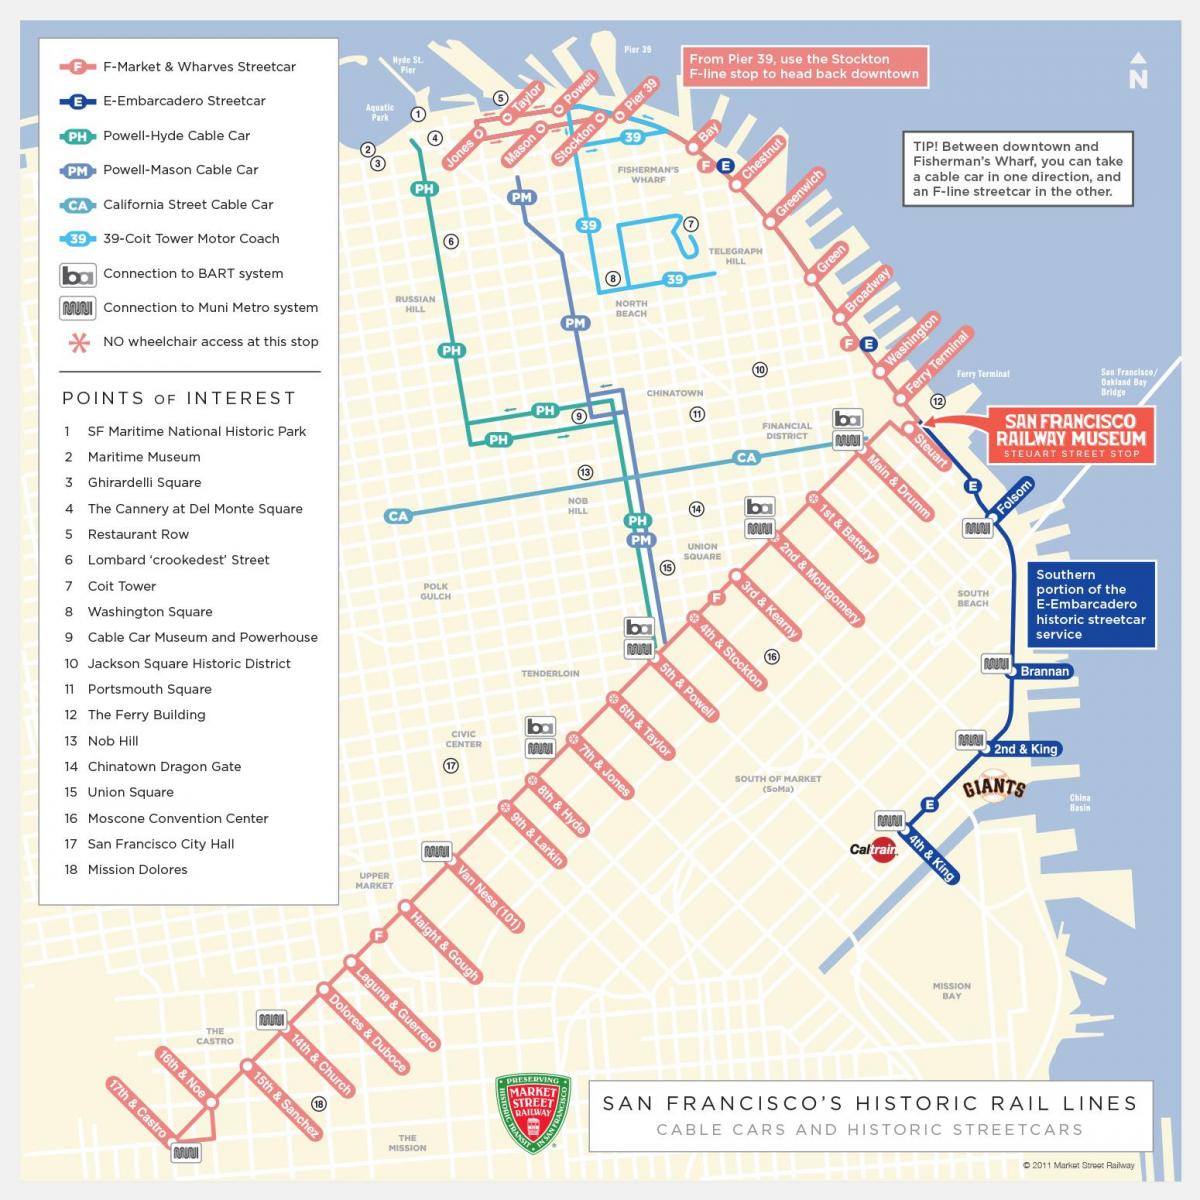 San Francisco tramvay güzergah haritası